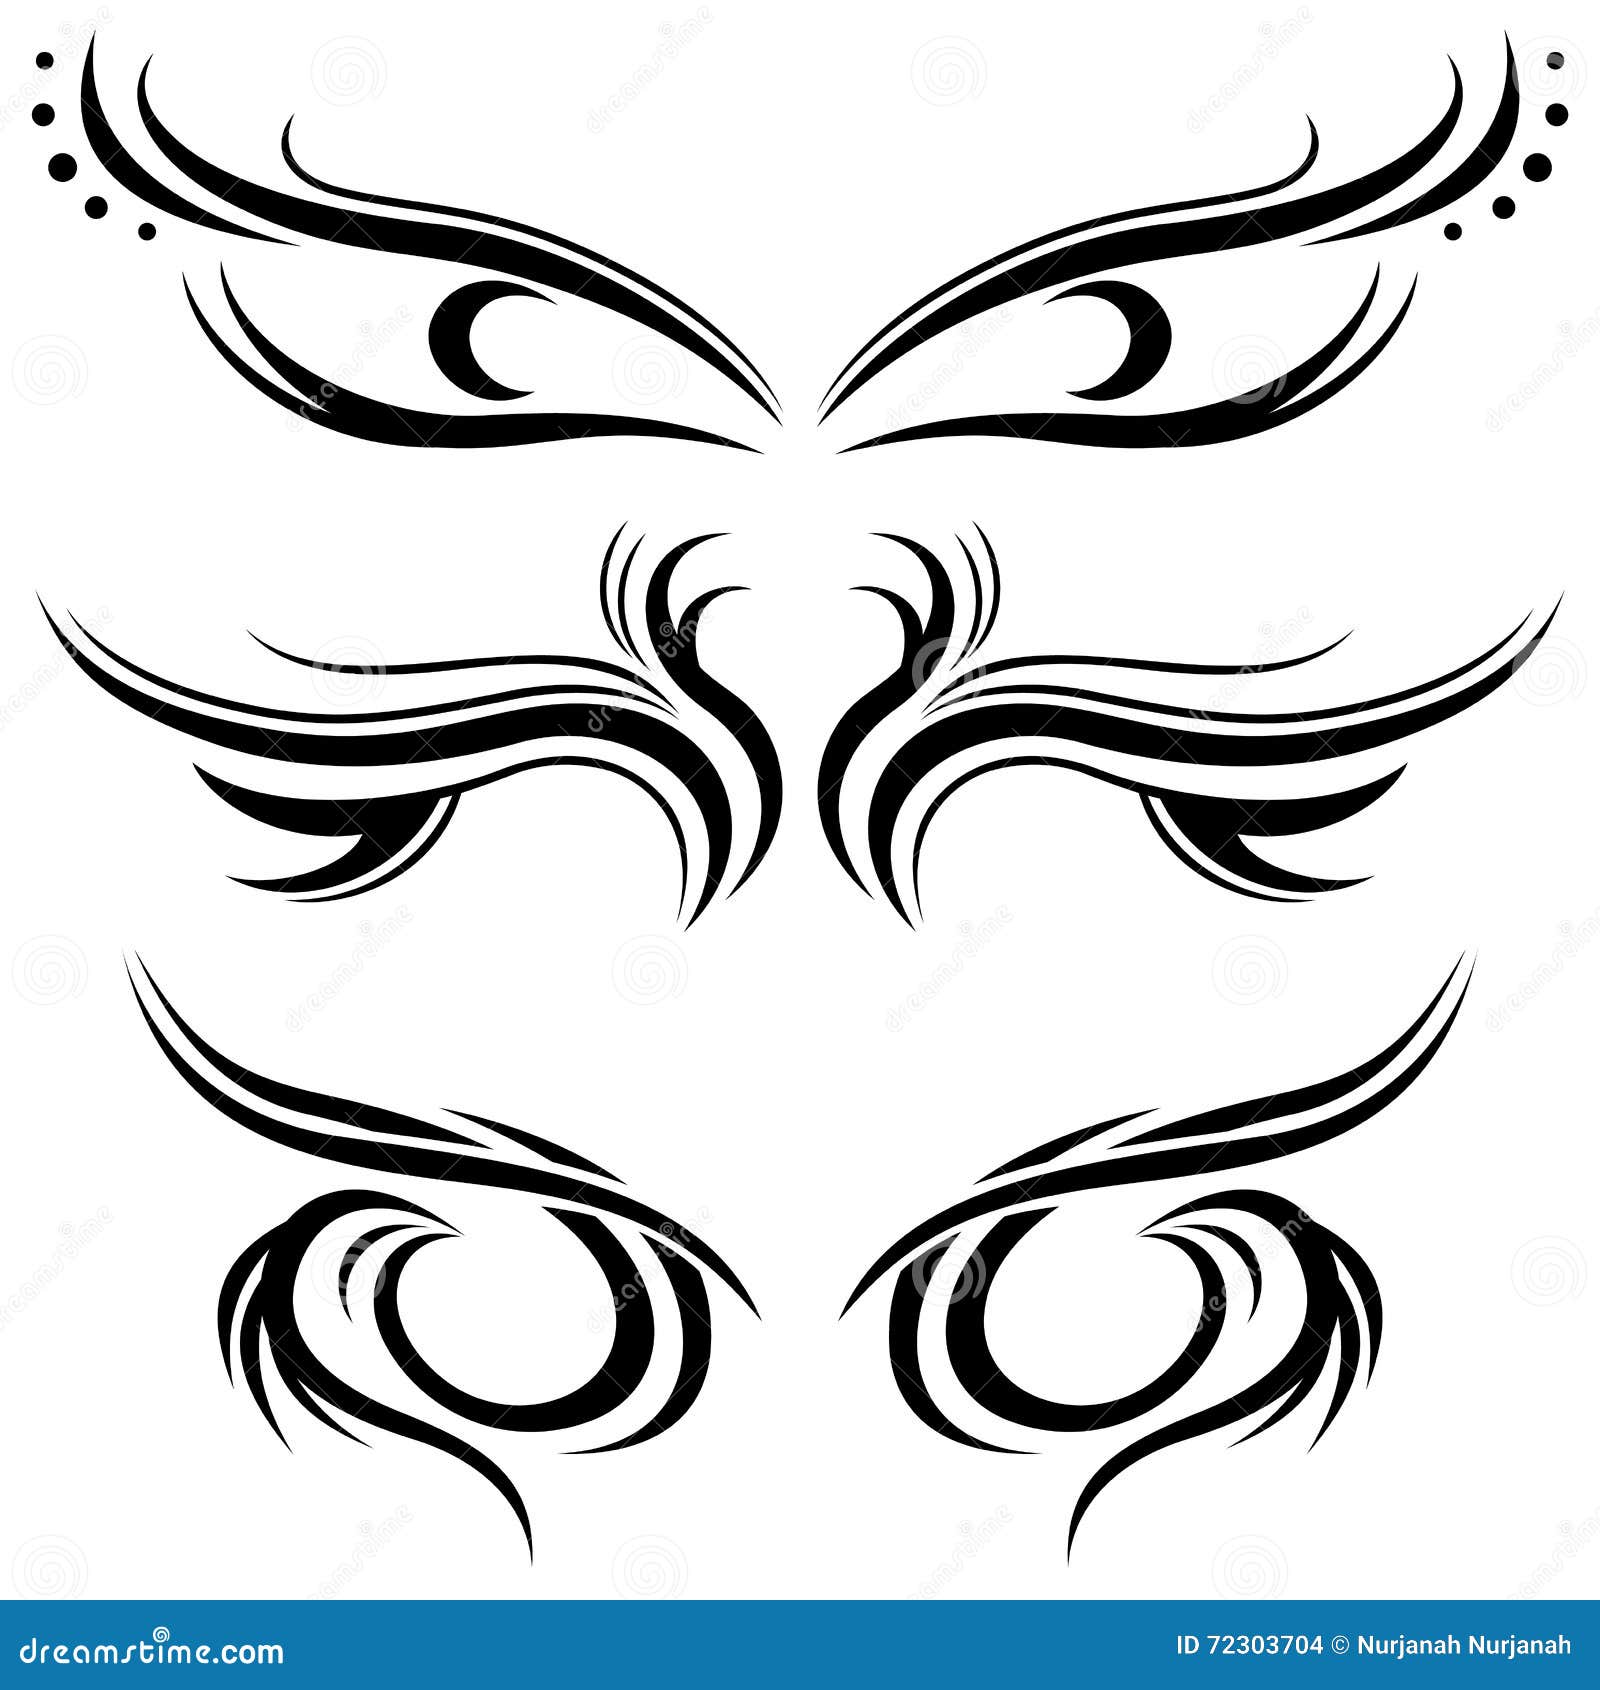 Tribal tattoo stock vector. Illustration of style, maori - 72303704